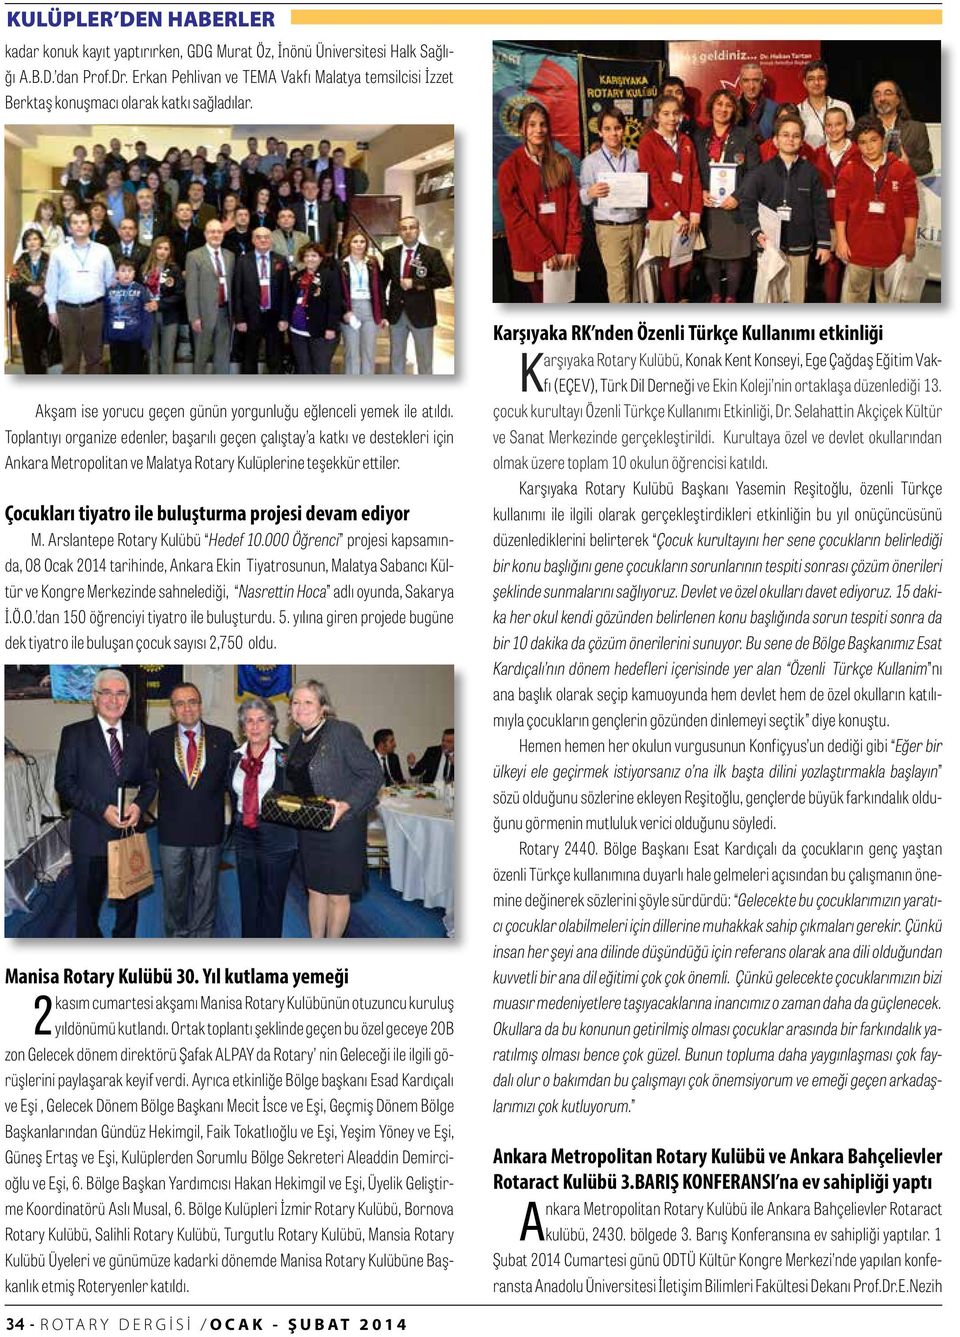 Toplantıyı organize edenler, başarılı geçen çalıştay a katkı ve destekleri için Ankara Metropolitan ve Malatya Rotary Kulüplerine teşekkür ettiler.